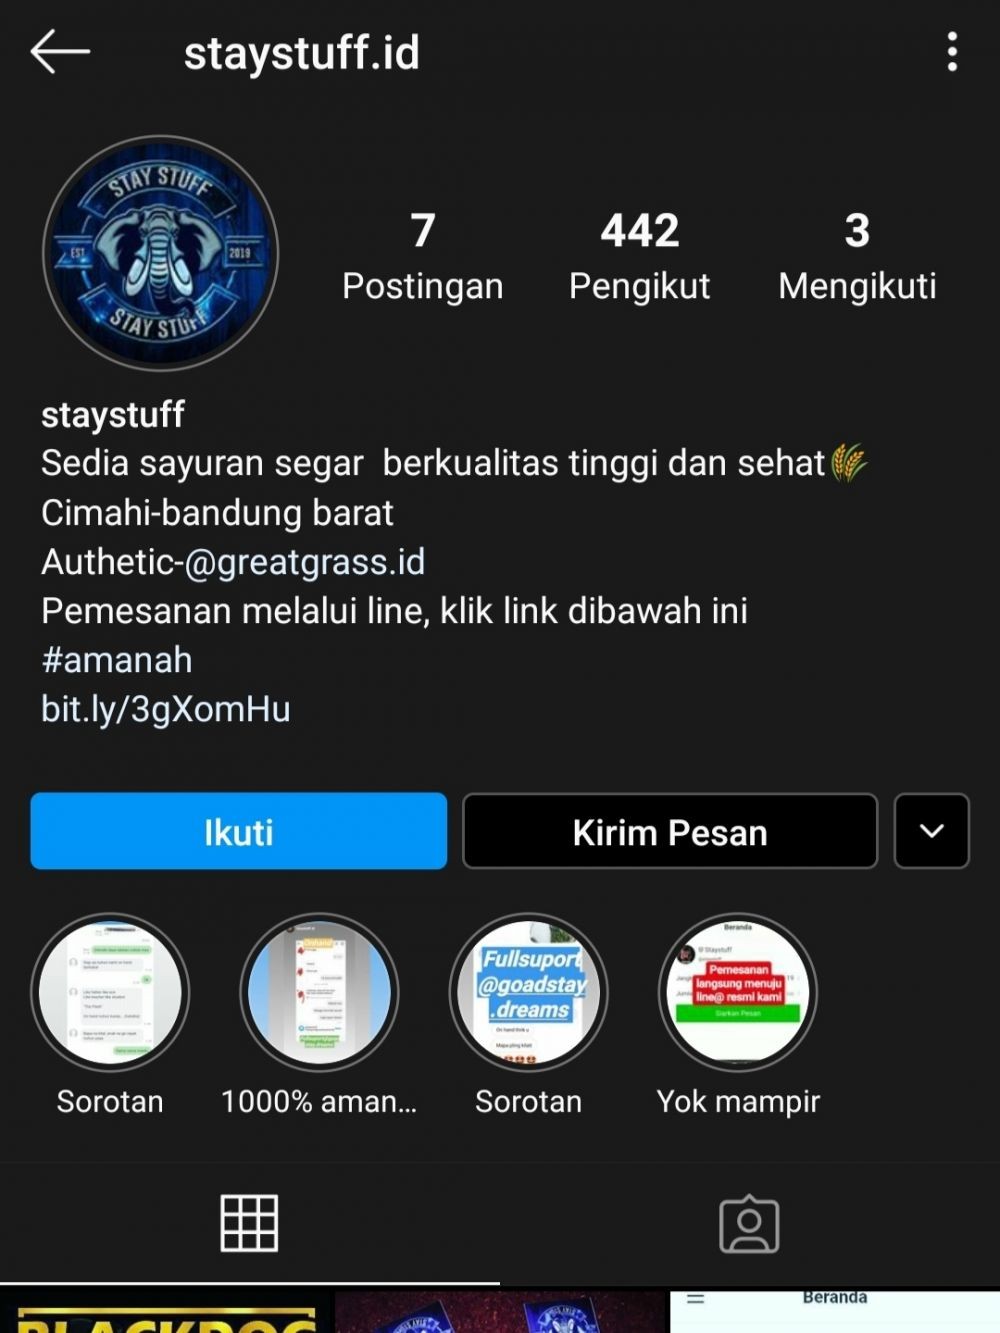 Jual Tembakau Gorila di Instagram, Pemilik Akun @staystuff.id Ditangkap